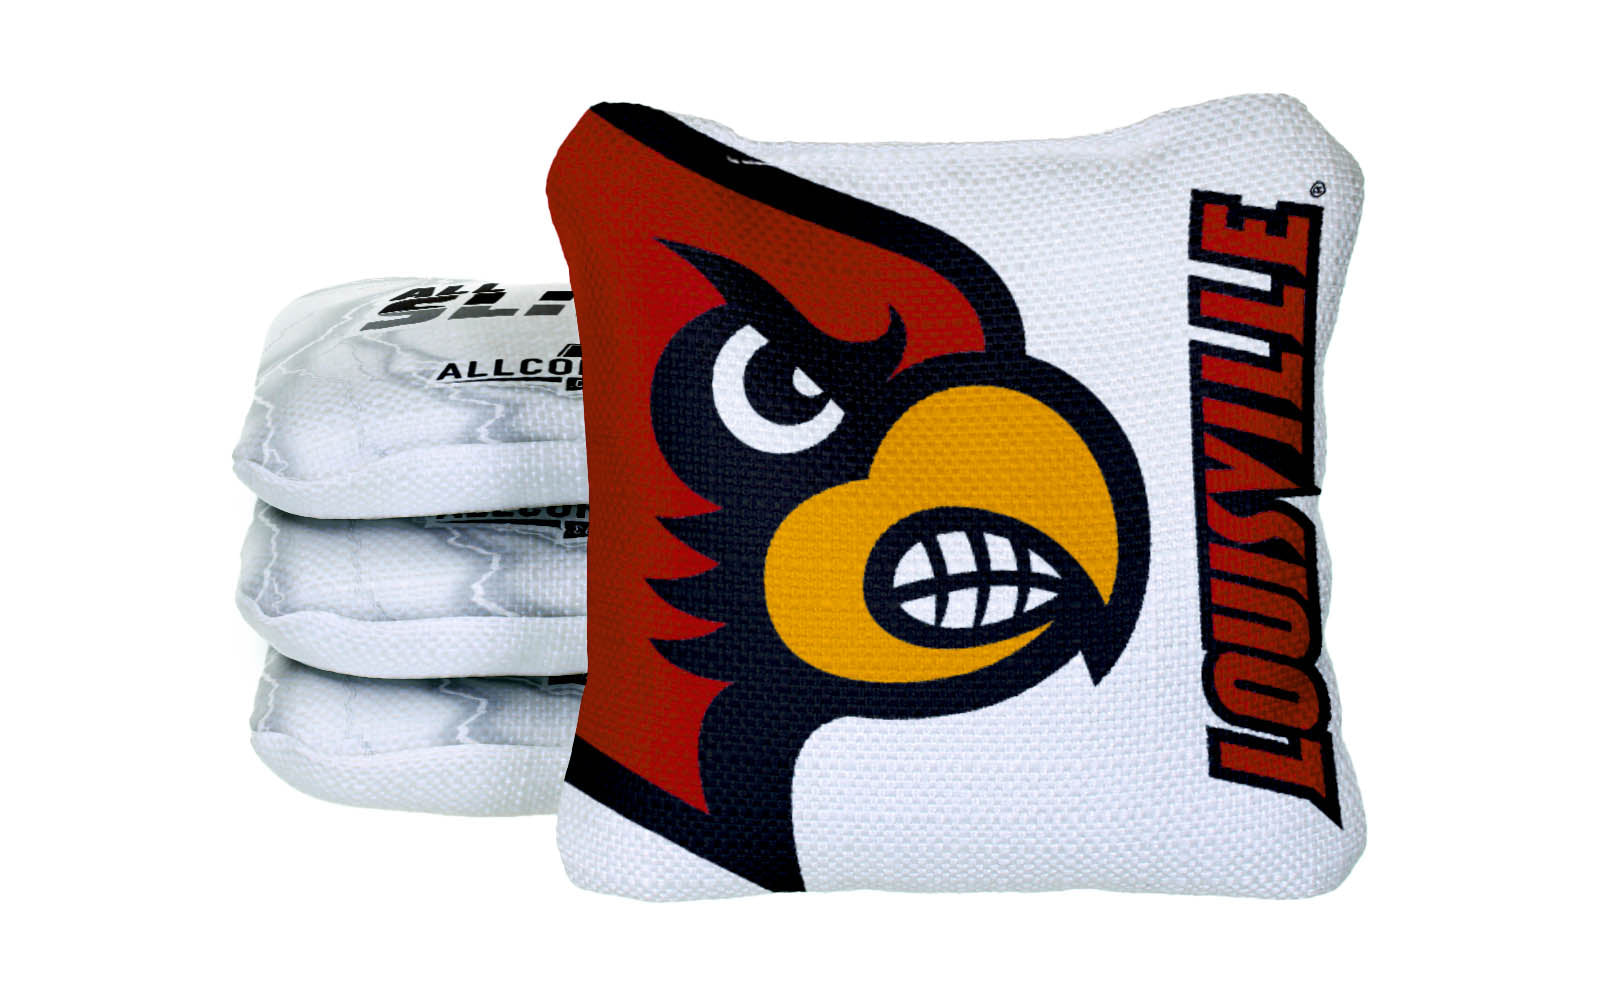 Officially Licensed Collegiate Cornhole Bags - AllCornhole All-Slide 2.0 - Set of 4 - University of Louisville